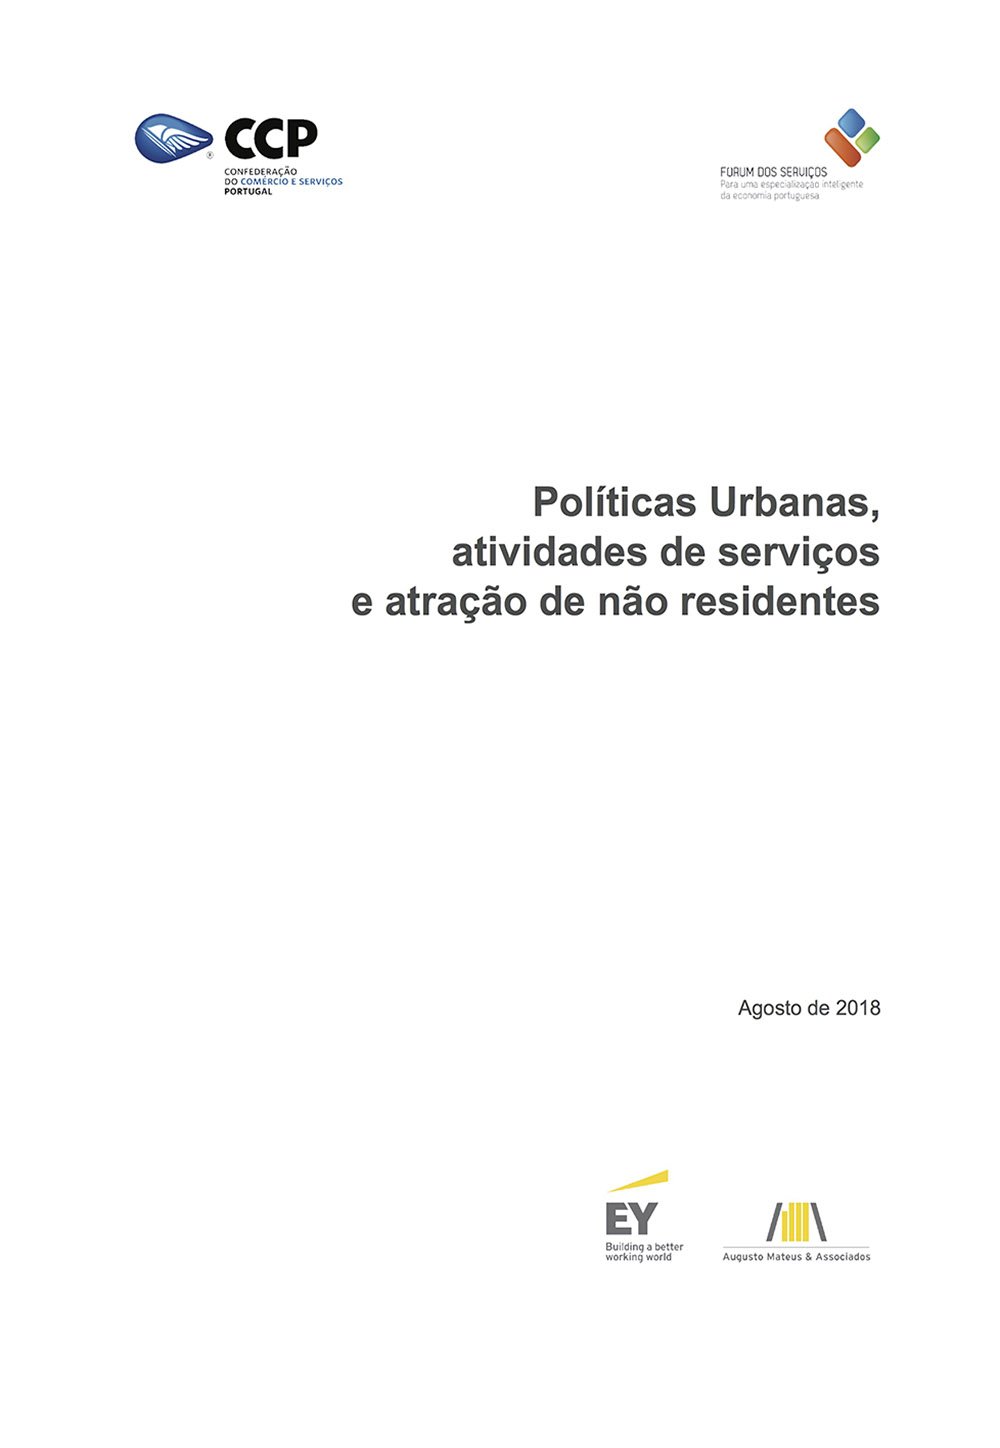 Políticas Urbanas, atividades de serviços e atração de não residentes